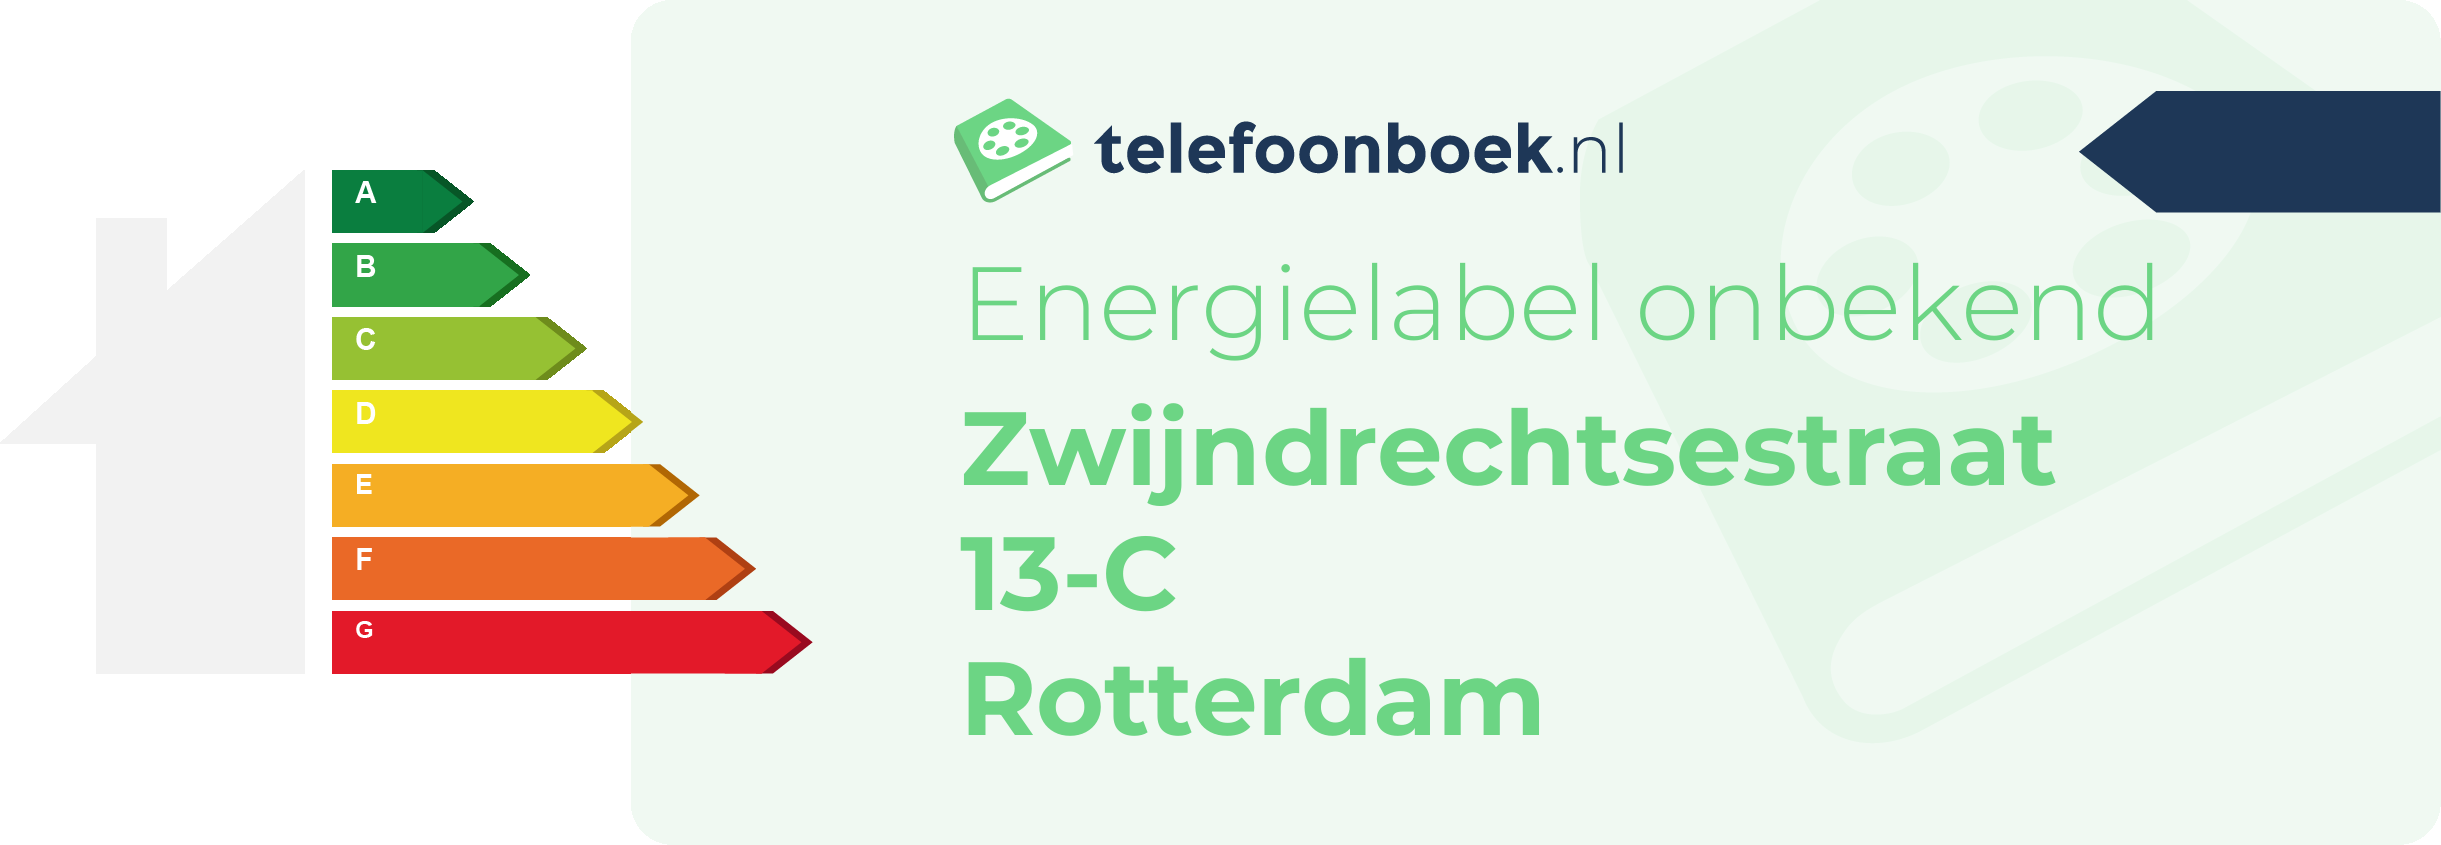 Energielabel Zwijndrechtsestraat 13-C Rotterdam